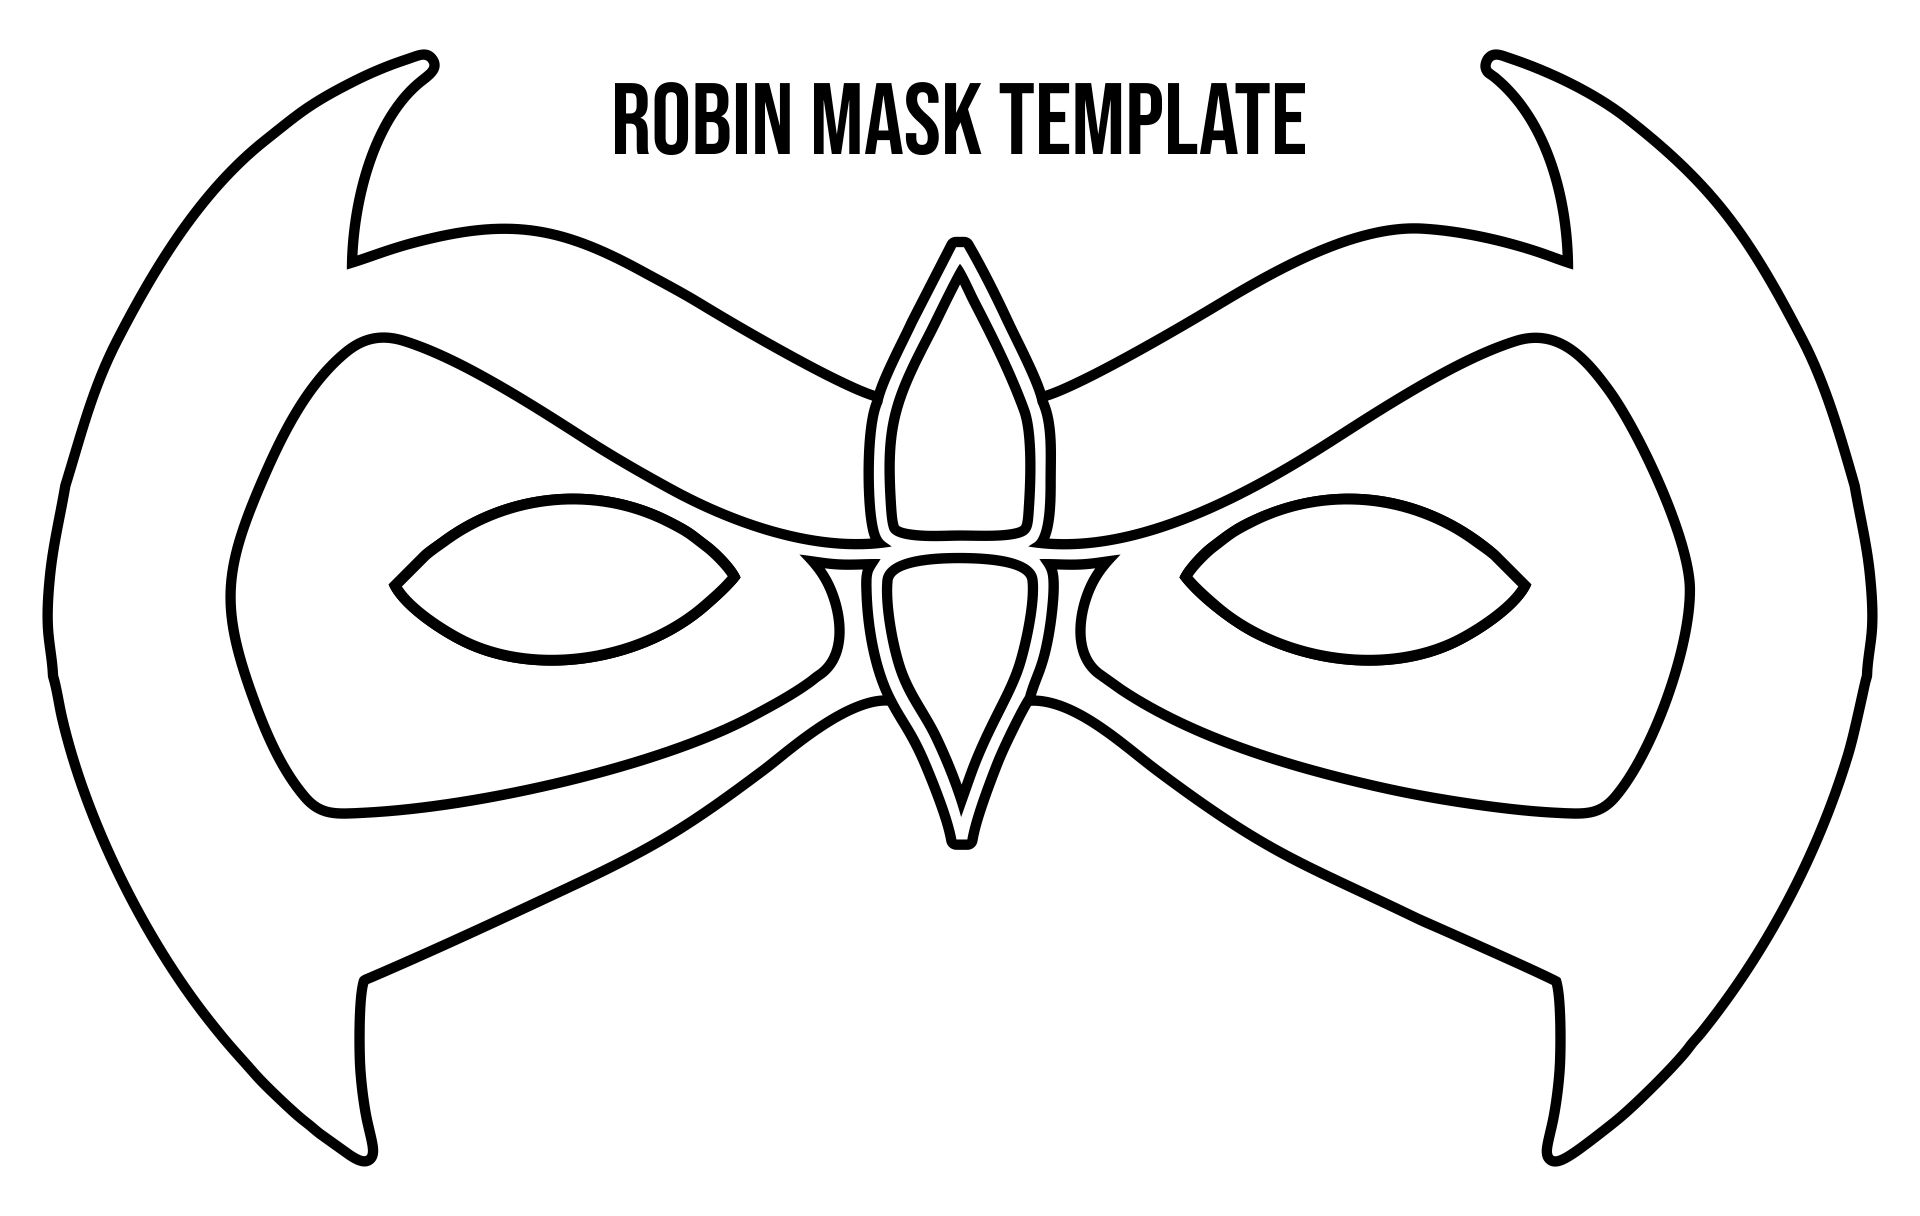 Robin Mask Template Printable